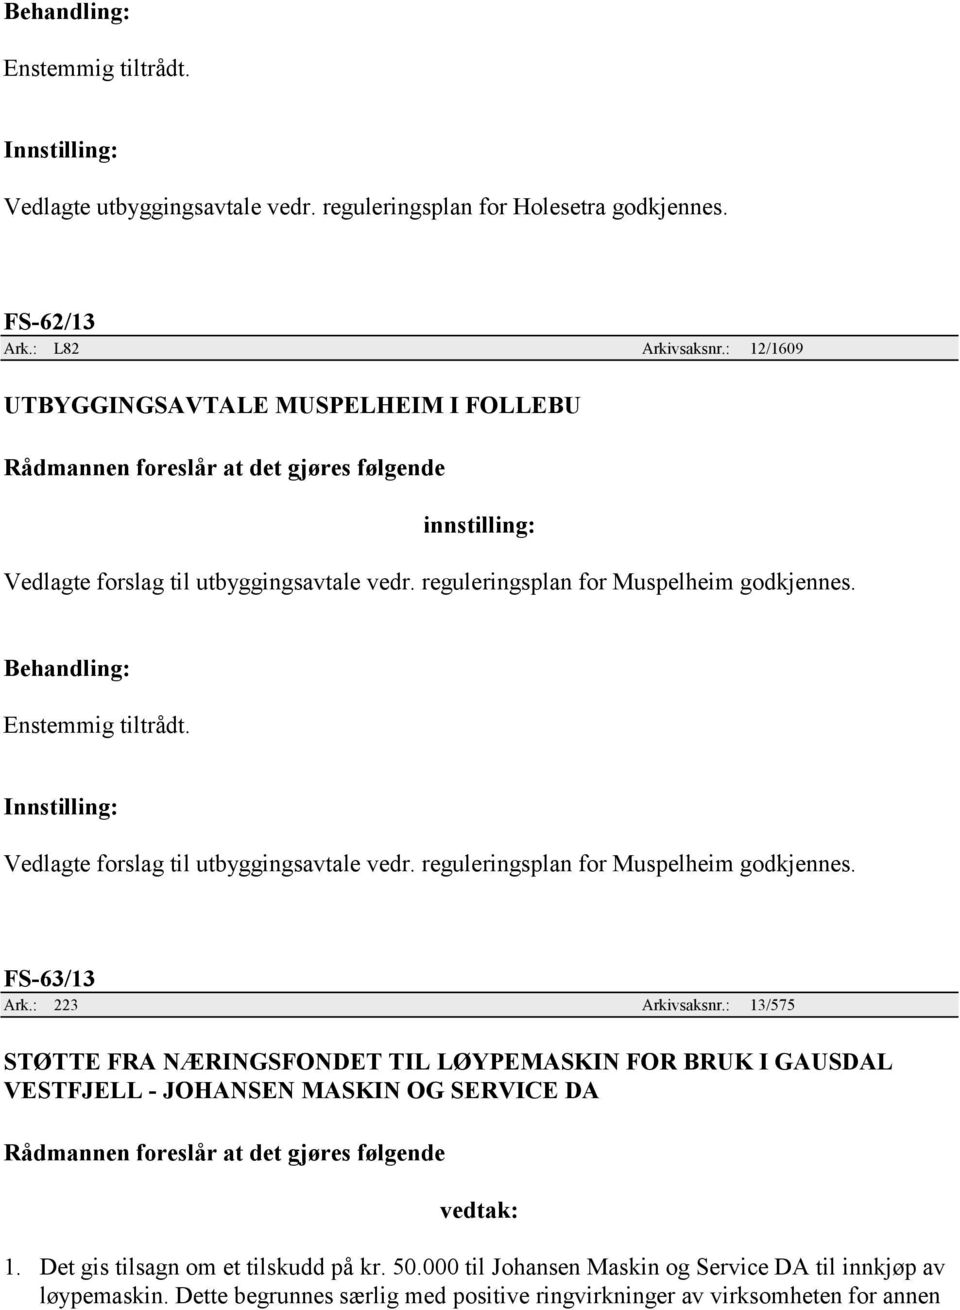 Innstilling: Vedlagte forslag til utbyggingsavtale vedr. reguleringsplan for Muspelheim godkjennes. FS-63/13 Ark.: 223 Arkivsaksnr.